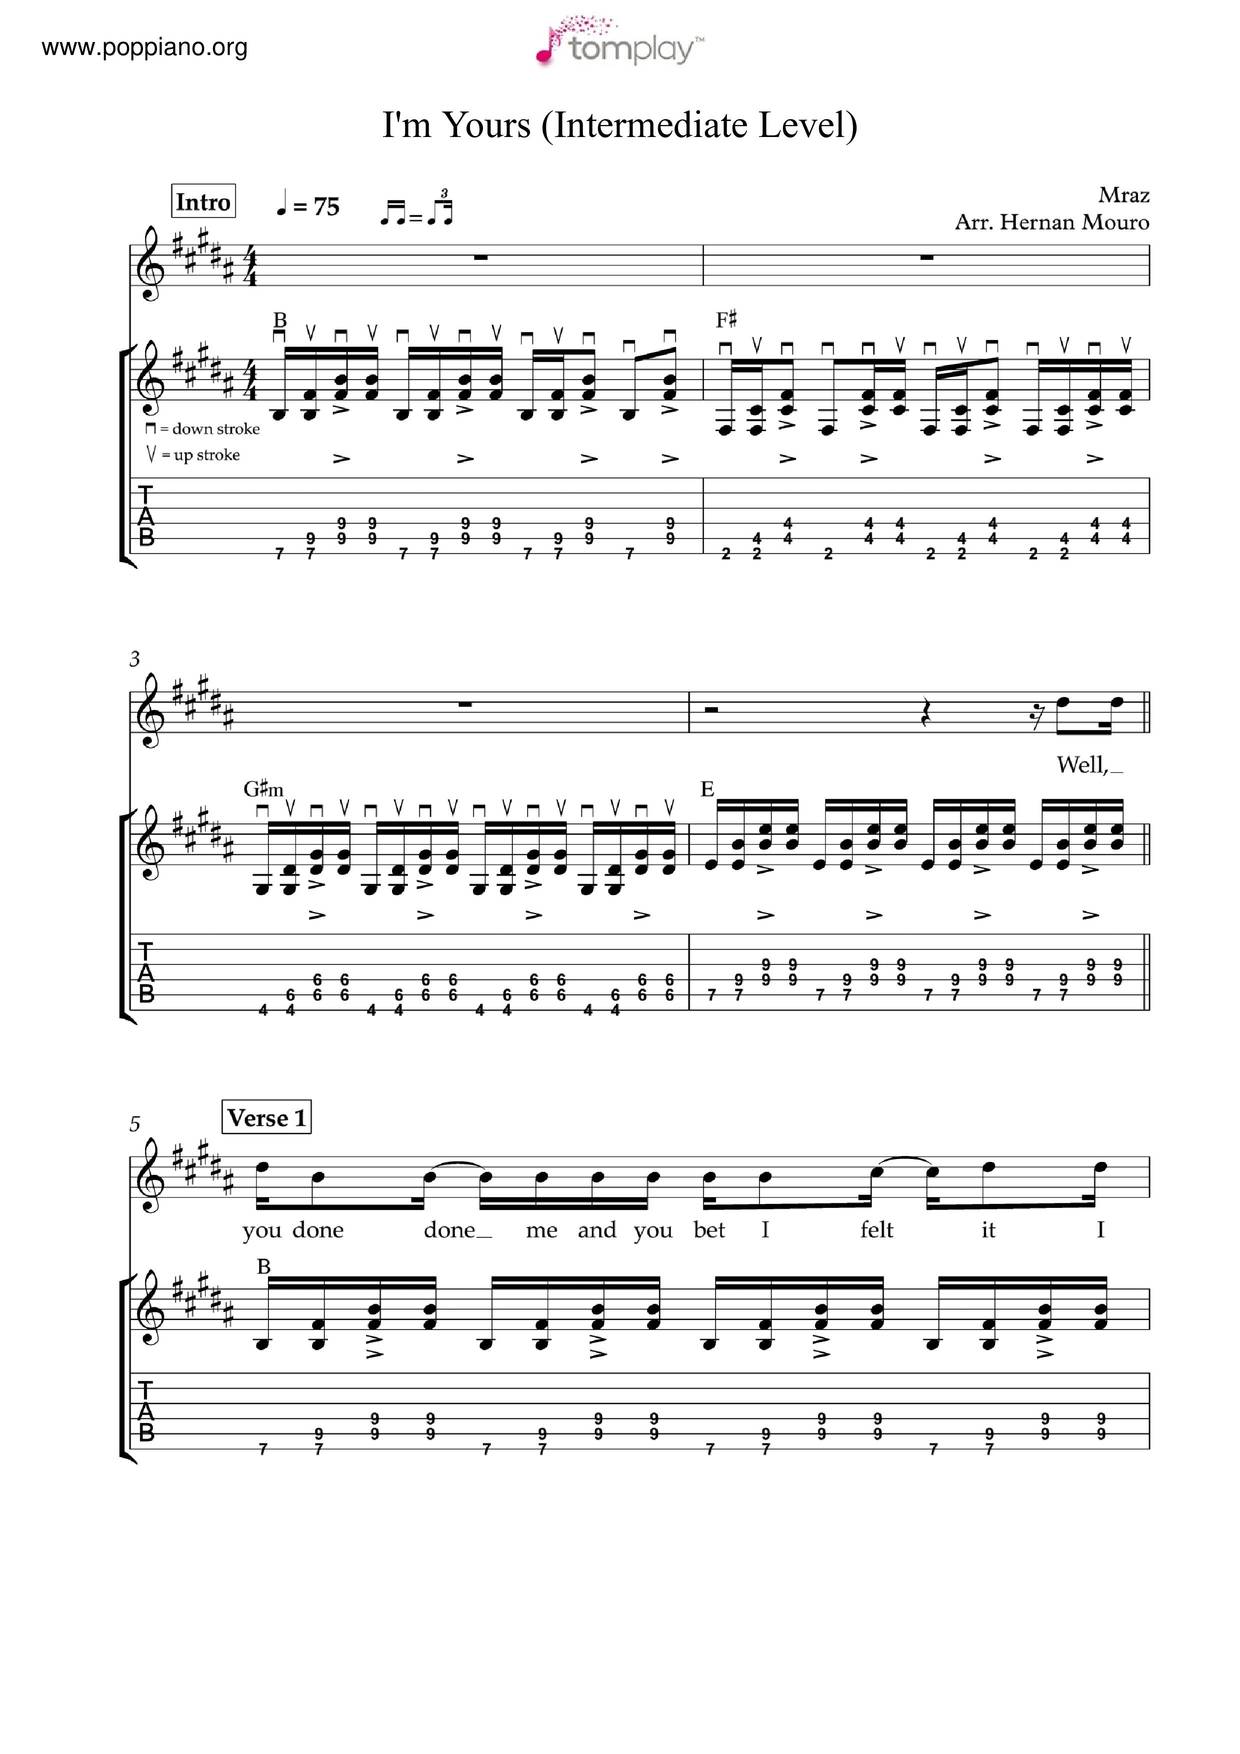 I'm Yours by Jason Mraz - Guitar Chords/Lyrics - Guitar Instructor